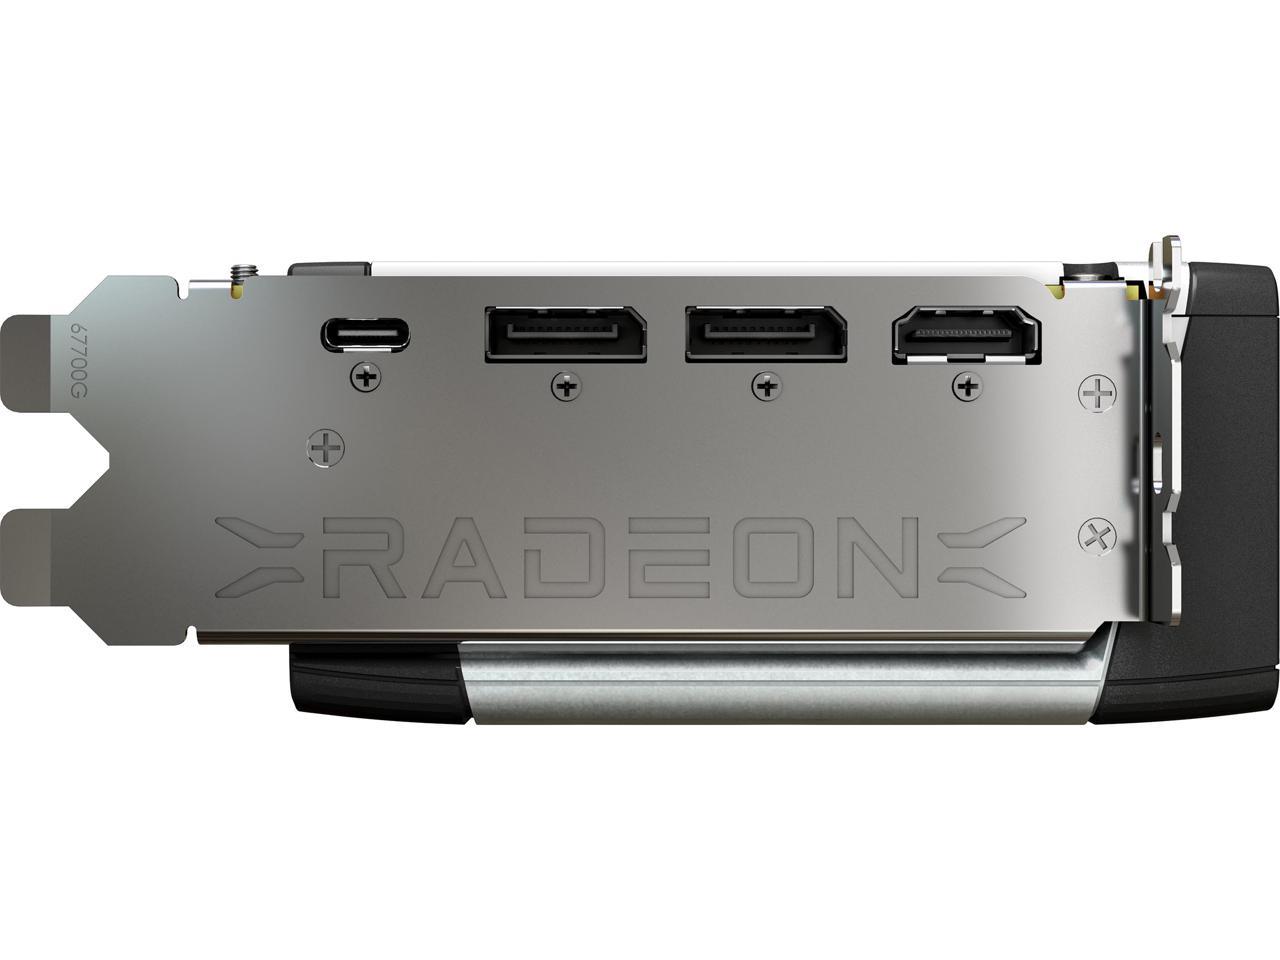 MSI Radeon RX 6900 XT 16GB GDDR6 Video Card RX 6900 XT 16G